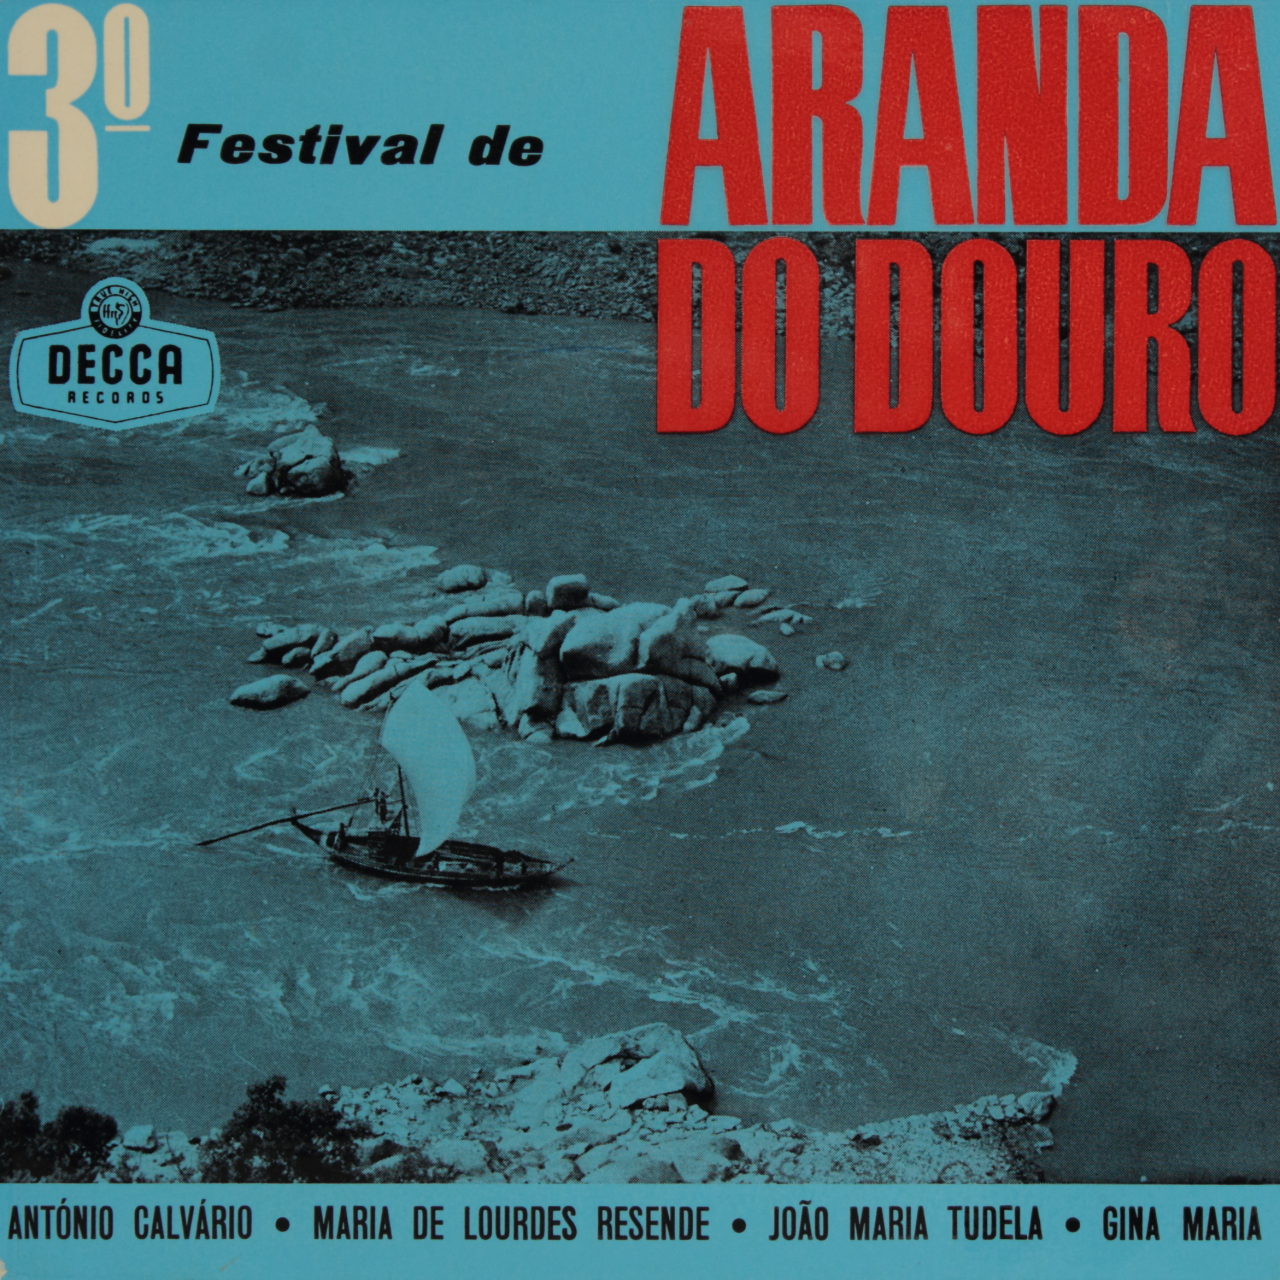 3º Festival de Aranda do Douro